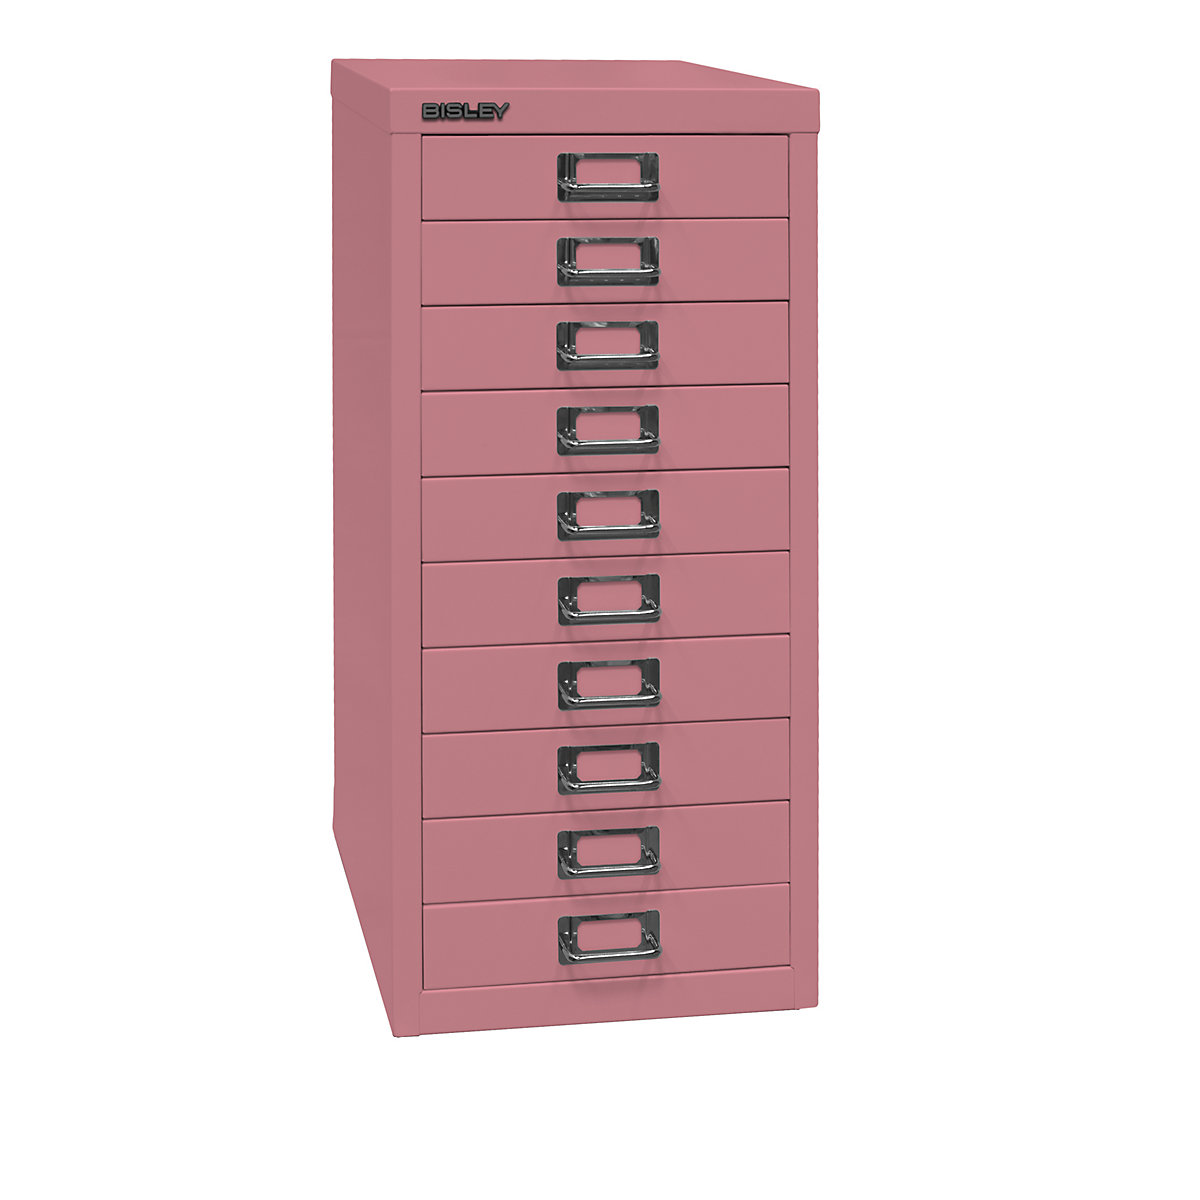 BISLEY MultiDrawer™ 29er Serie, DIN A4, 10 Schubladen, pink